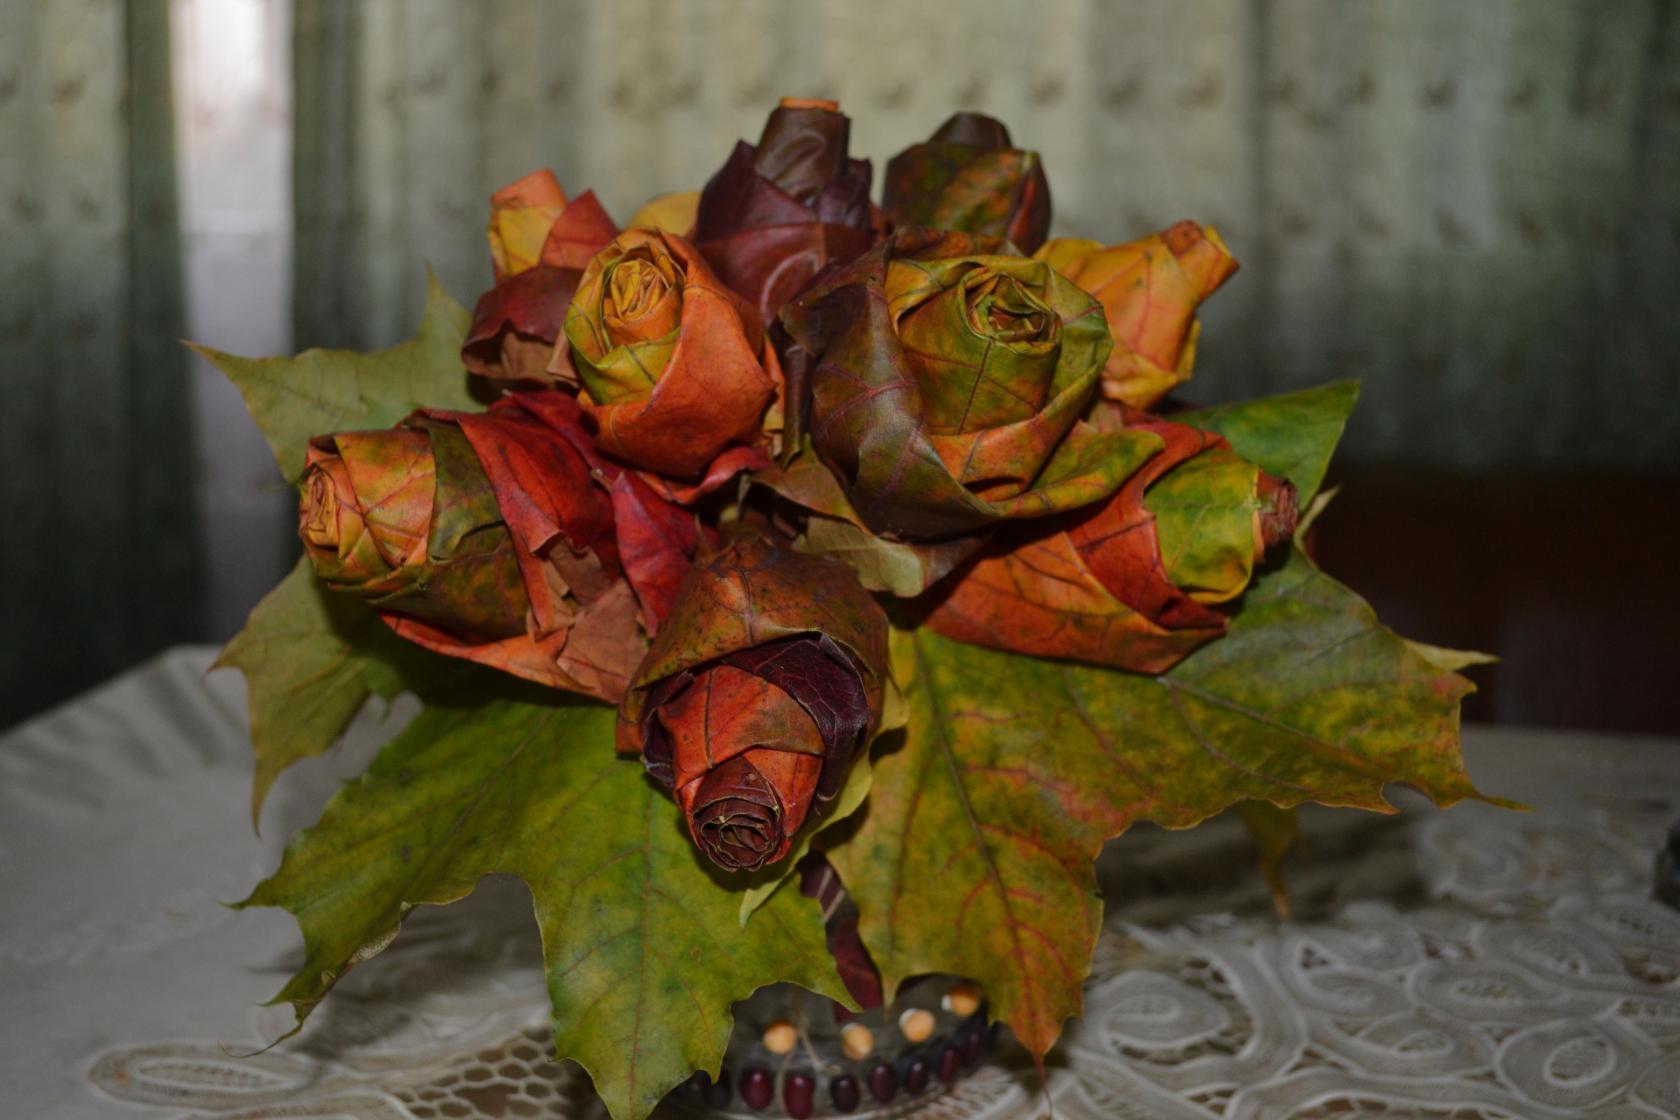 Цветы своими руками из листьев: Цветок из осенних листьев - Поделки из природного материала , Аппликация, для детей от 7 лет